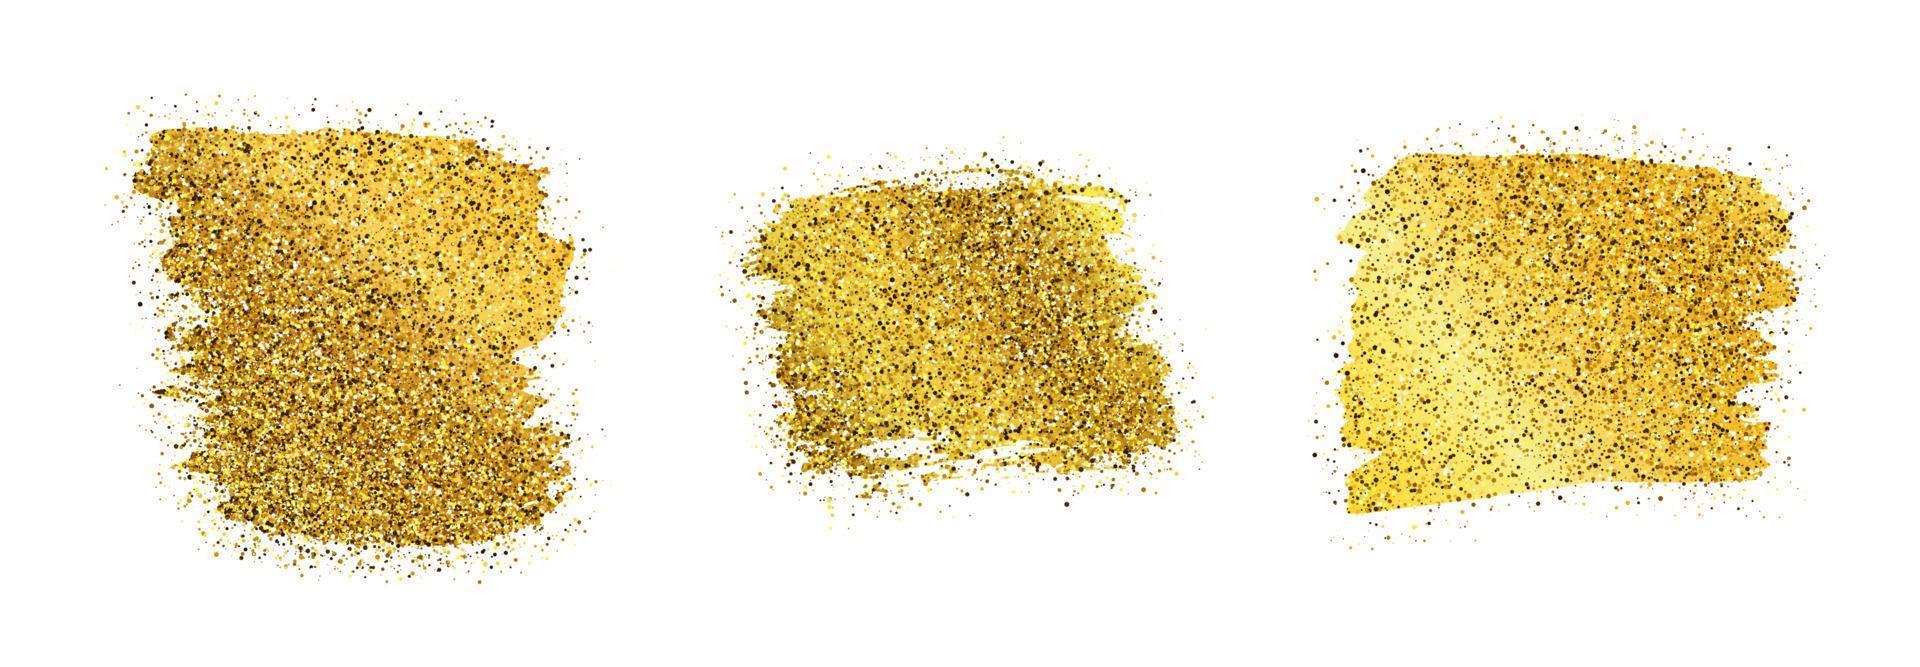 uppsättning av tre gyllene glittrande utstryker på en vit bakgrund. bakgrund med guld pärlar och glitter effekt. tömma Plats för din text. vektor illustration